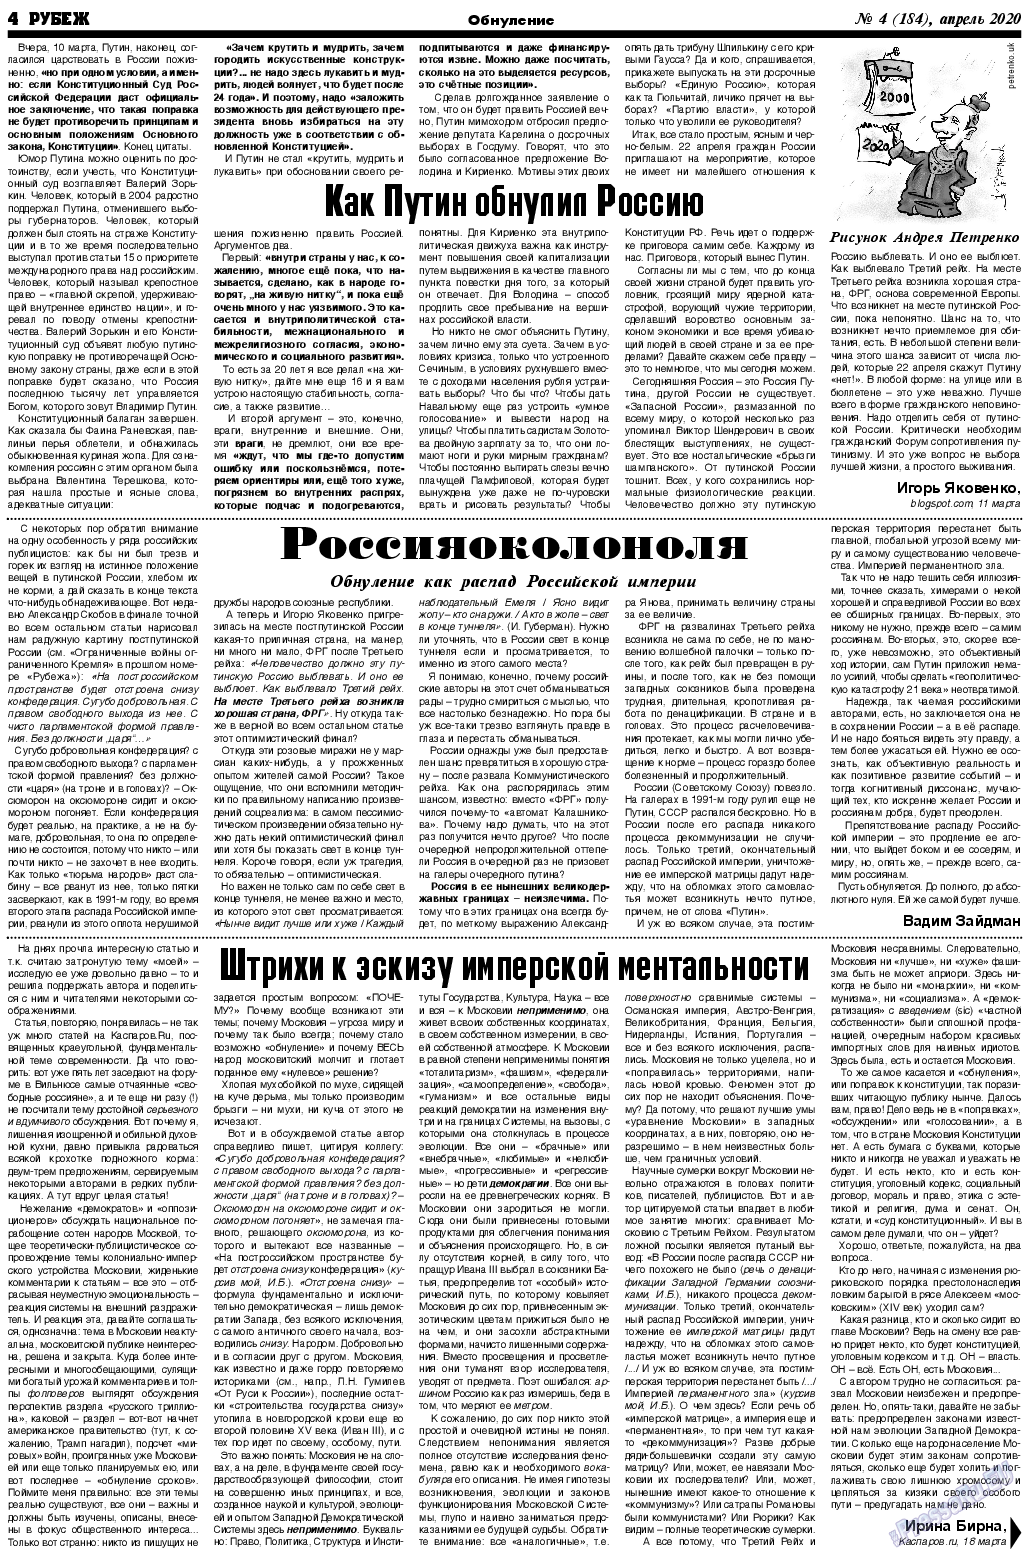 Рубеж (газета). 2020 год, номер 4, стр. 4